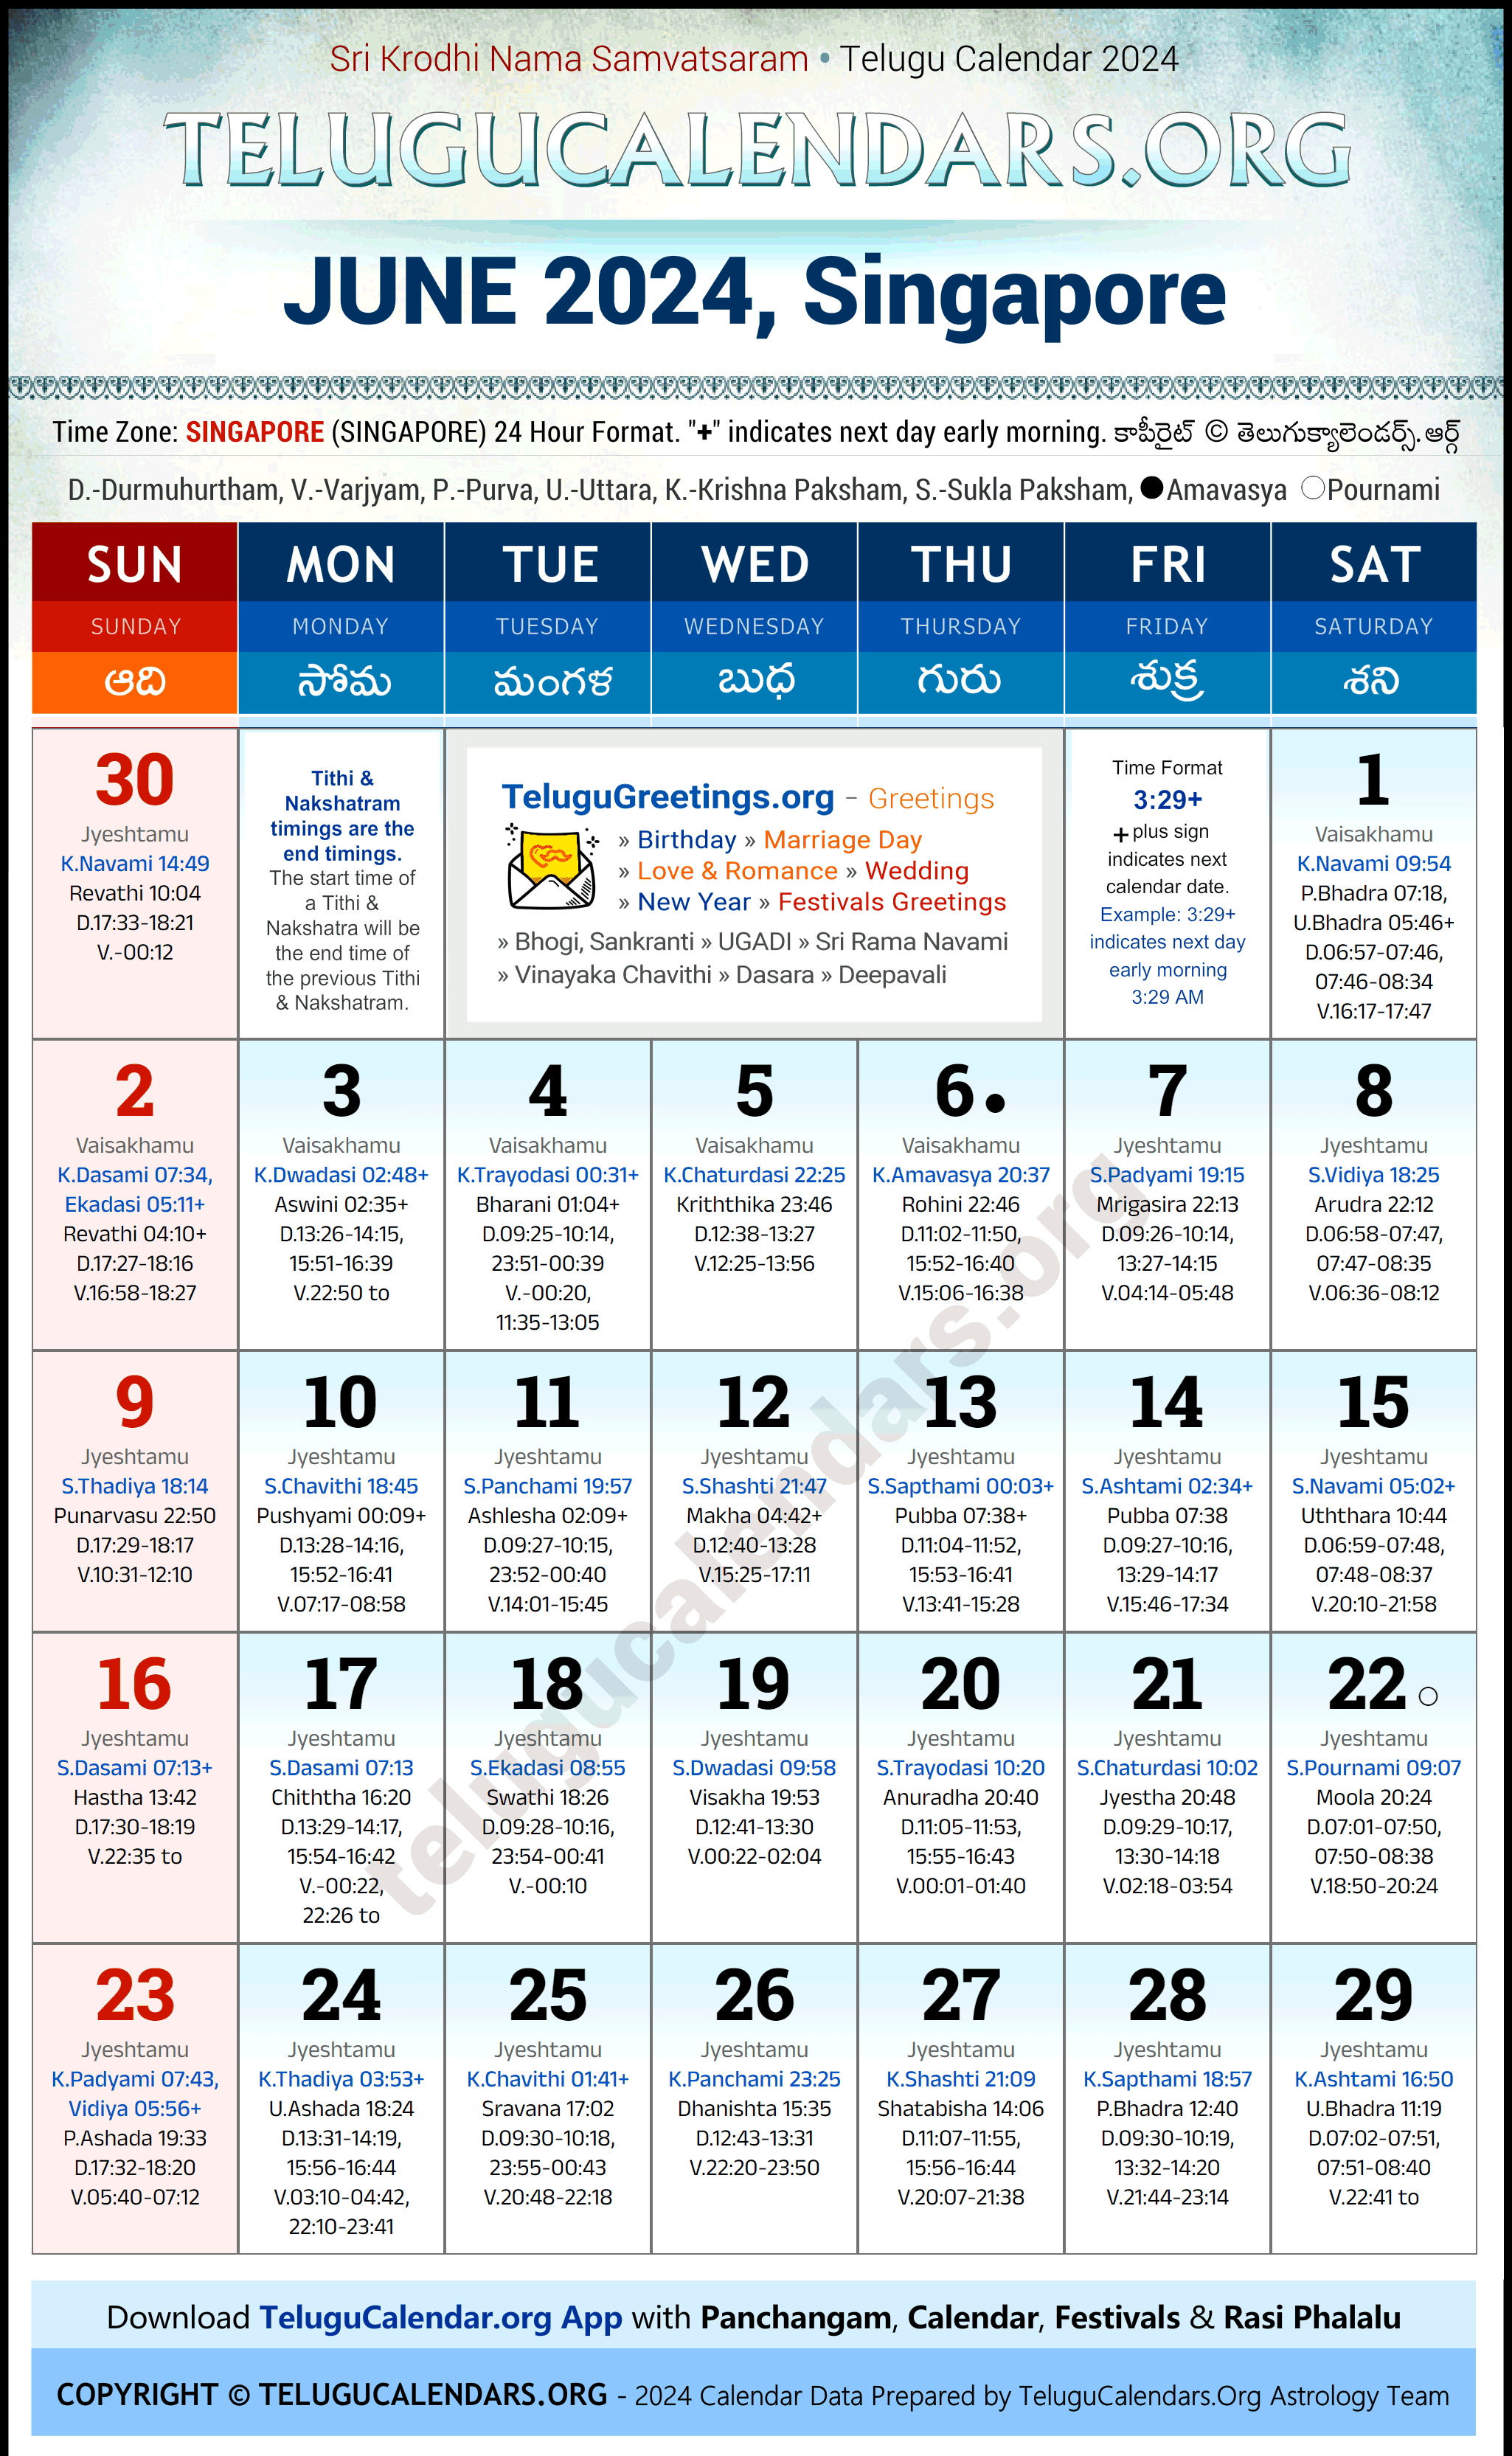 Telugu Calendar 2024 June Festivals for Singapore